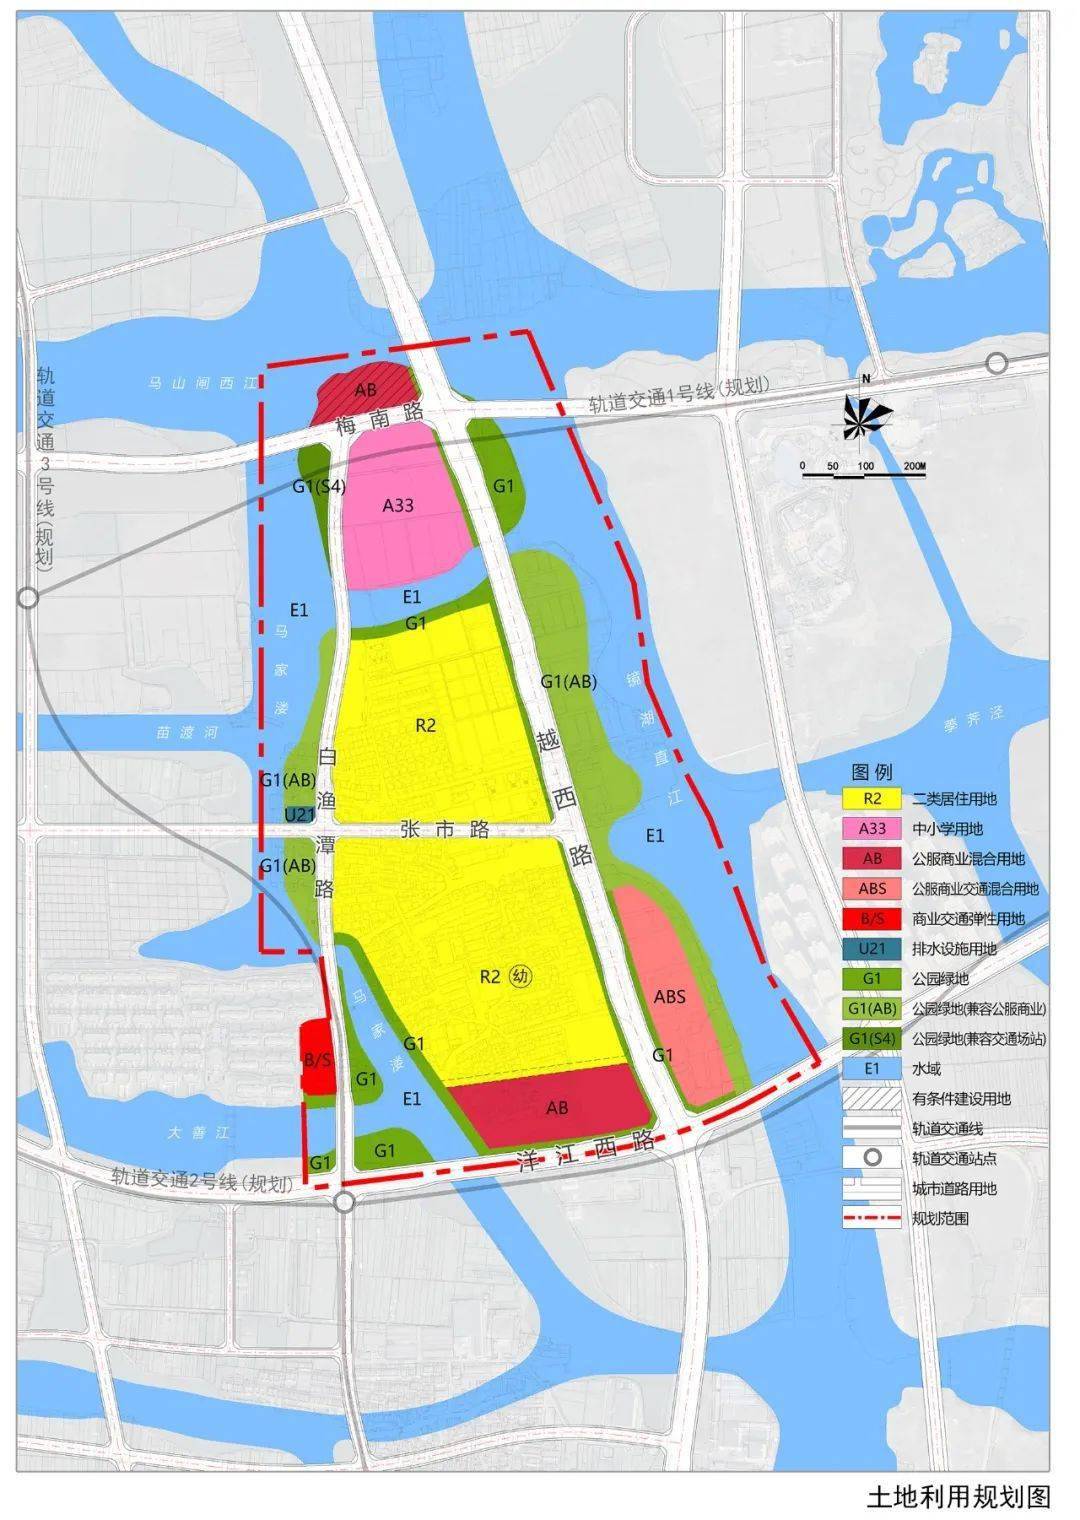 7月13日,绍兴市自然资源和规划局发布了镜湖新区三则控制性详细规划